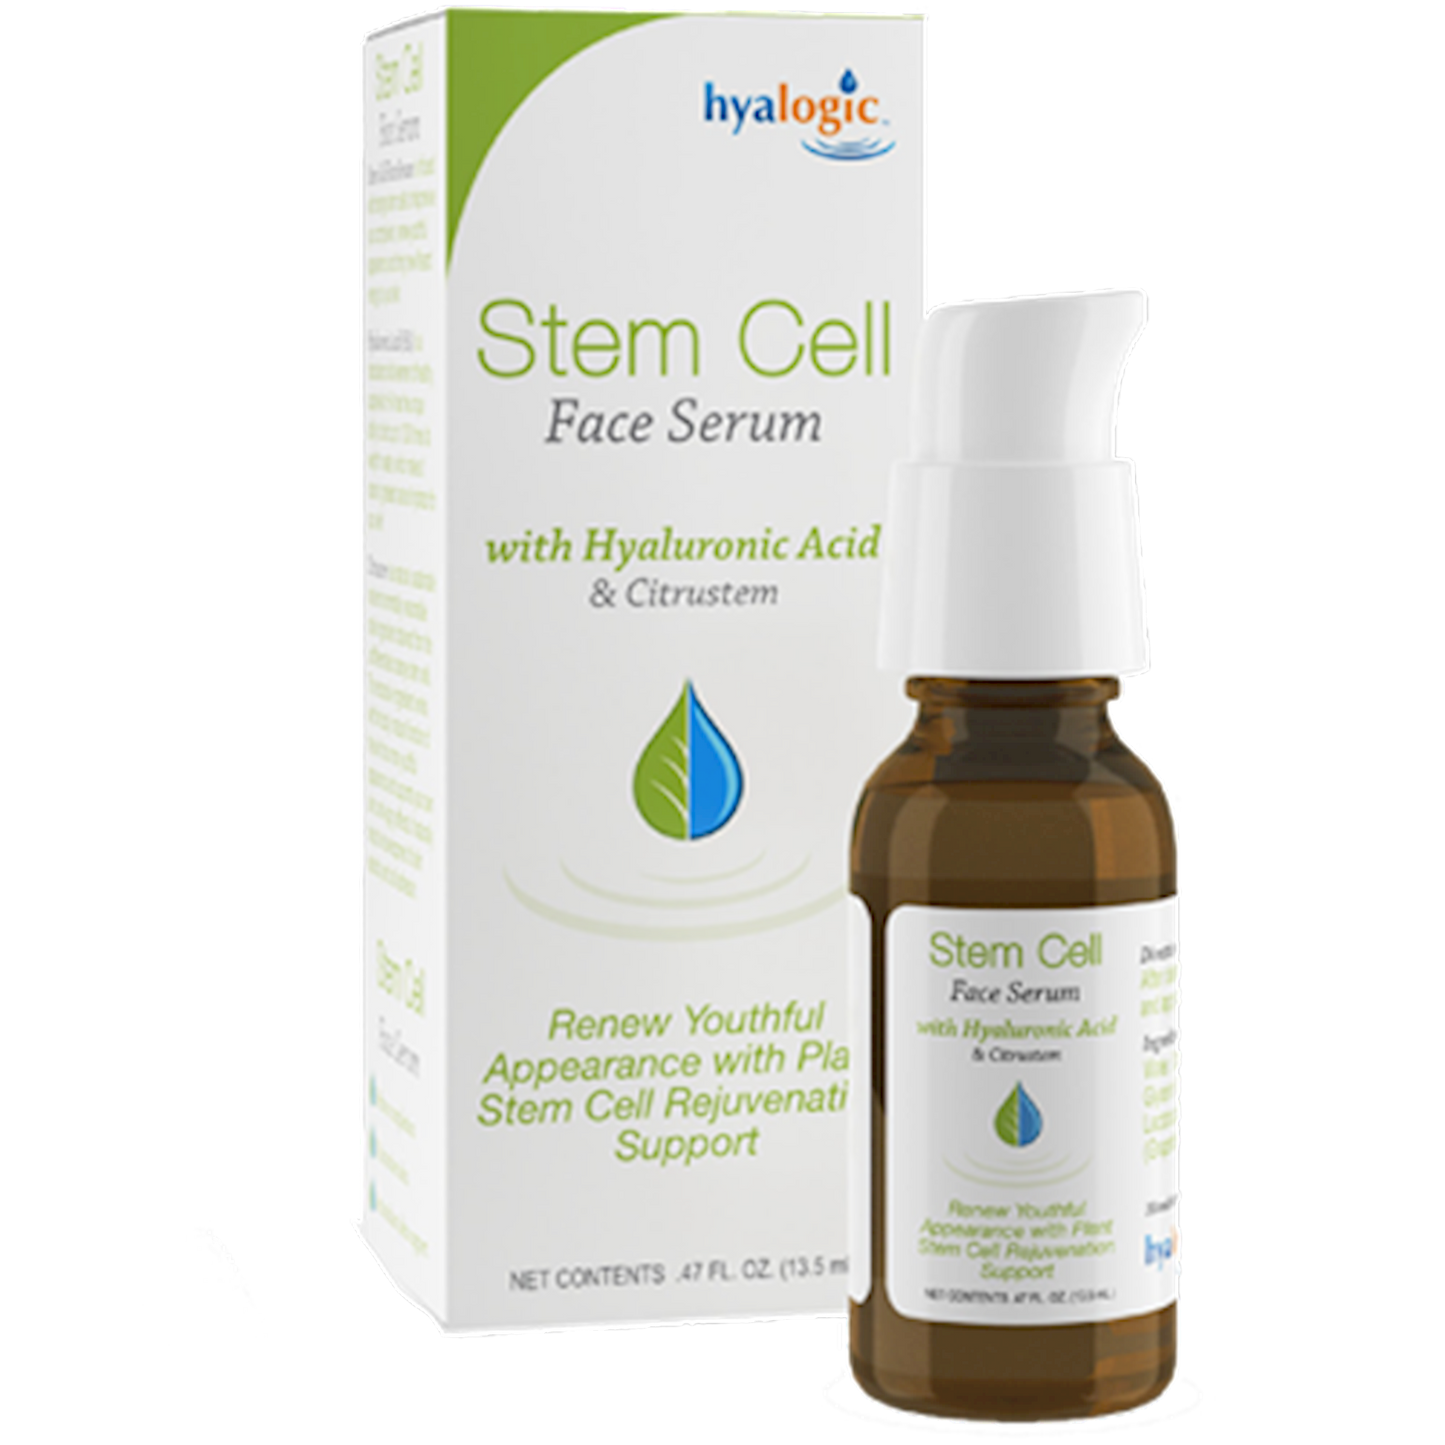 Stem Cell Face Serum